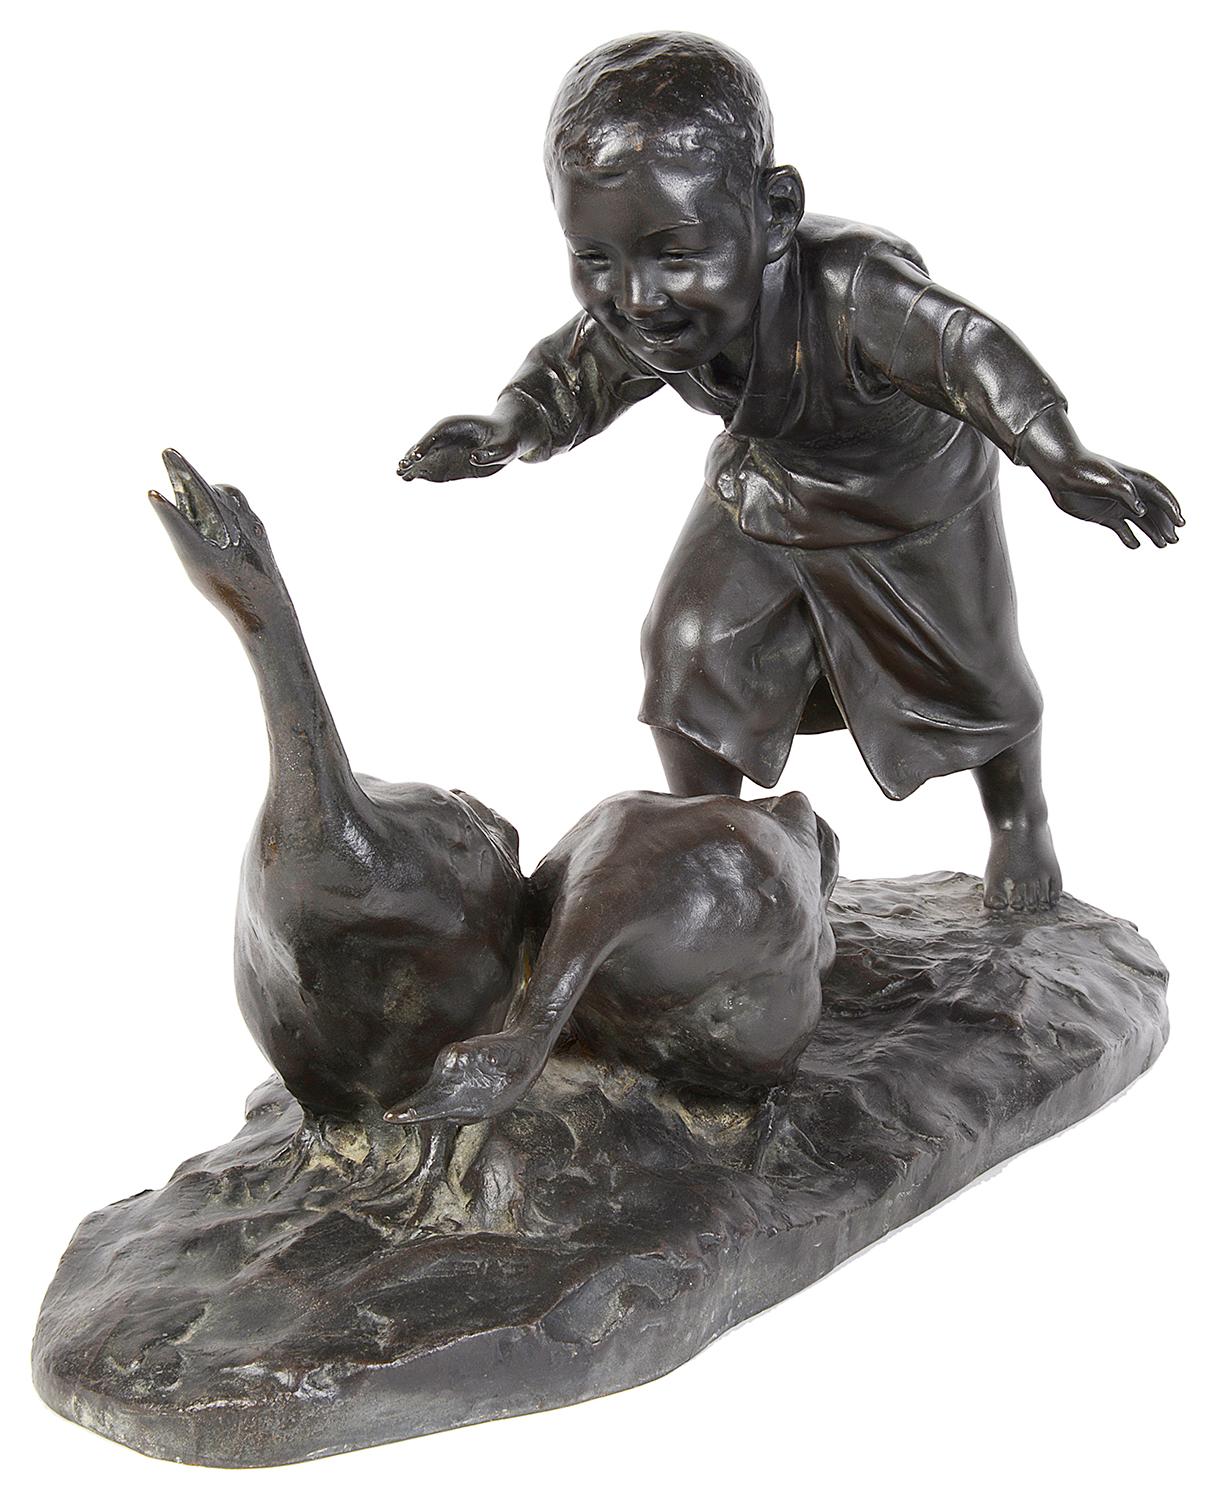 Très belle étude japonaise en bronze du XIXe siècle (période Meiji 1868-1912) représentant un jeune garçon poursuivant deux oies.